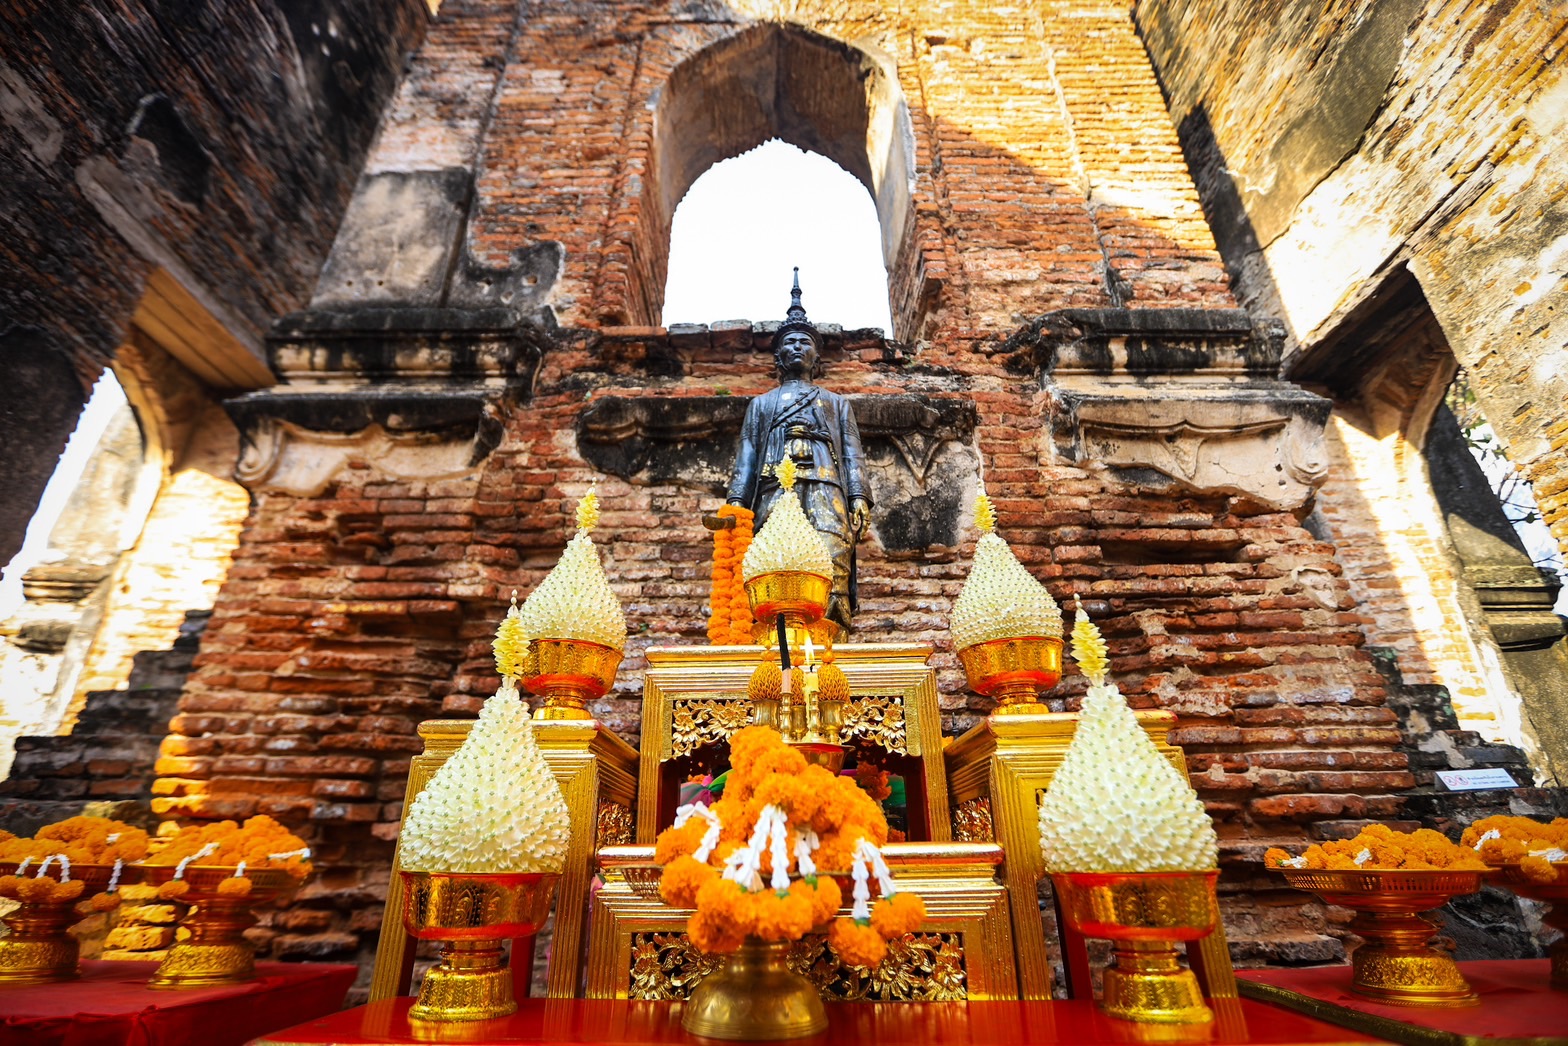 ผู้ว่าฯลพบุรี นำส่วนราชการ องค์กรทุกภาคส่วนของจังหวัดลพบุรี ทำพิธีขอพระบรมราชานุญาต จัดงานแผ่นดินสมเด็จพระนารายณ์มหาราช ครั้งที่ 36 ประจำปี 2567